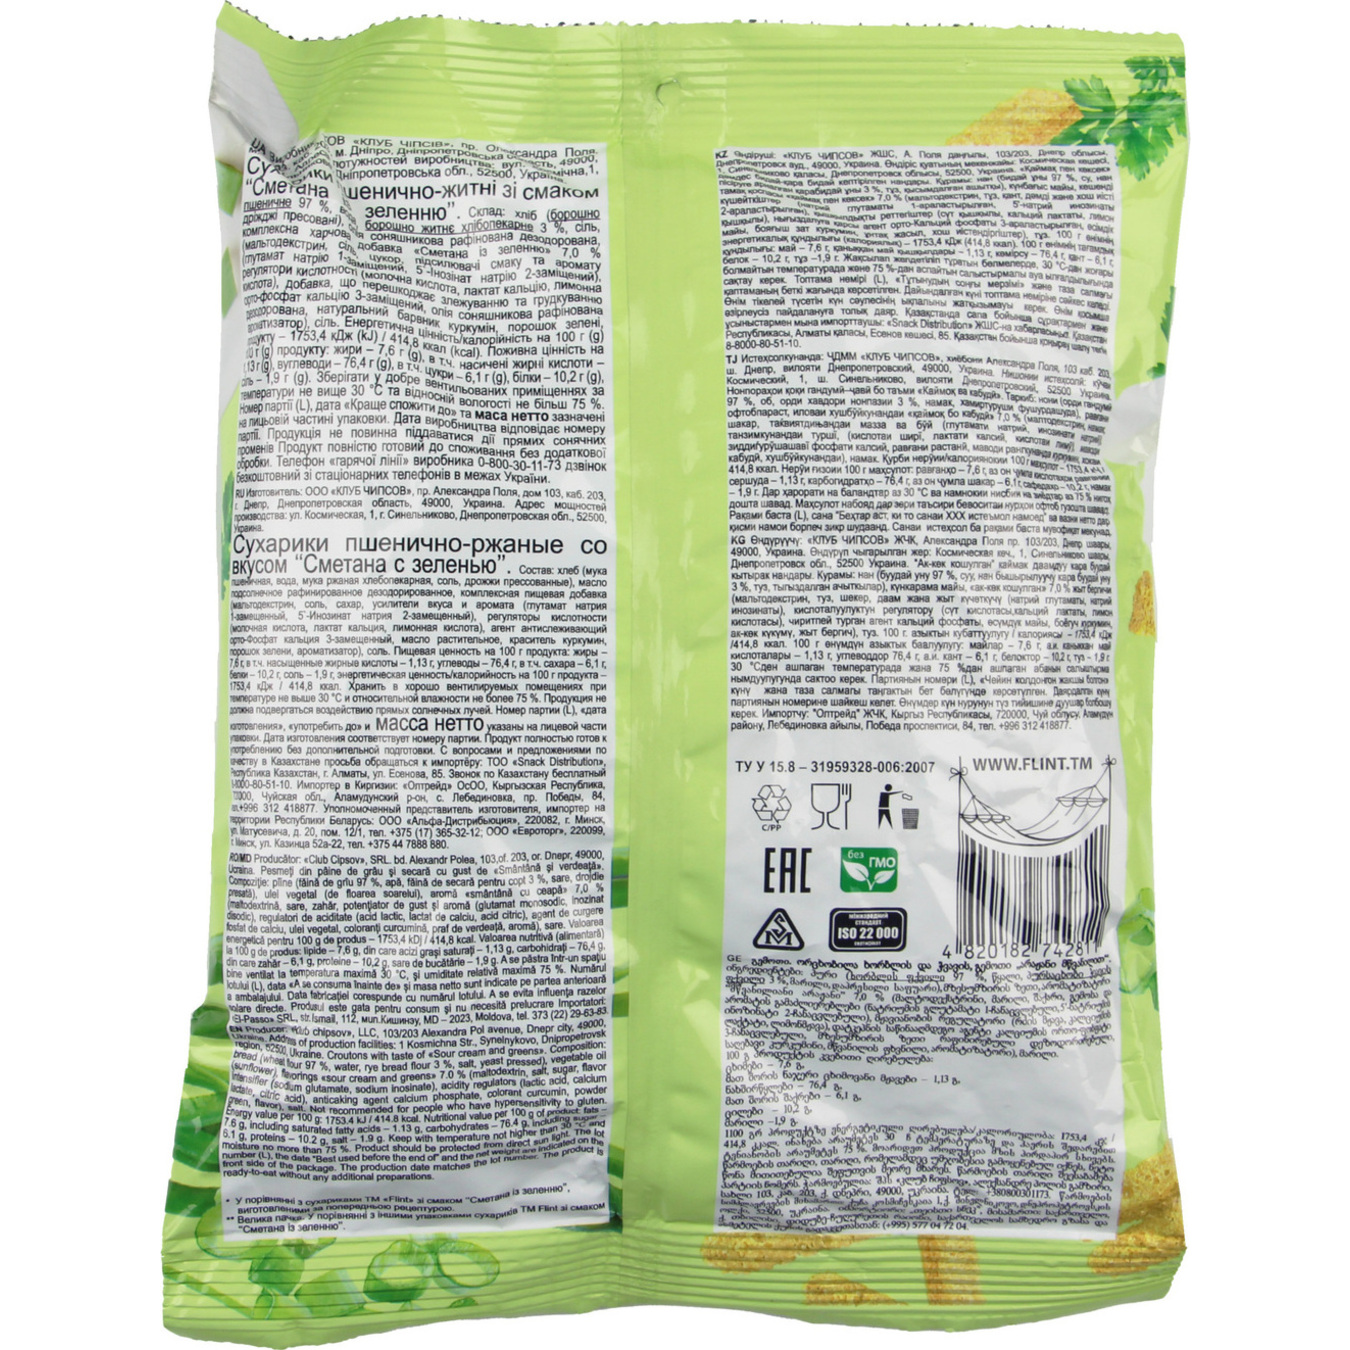 Сухарики Flint пшенично-ржаные со вкусом сметаны и зелени 110г 2